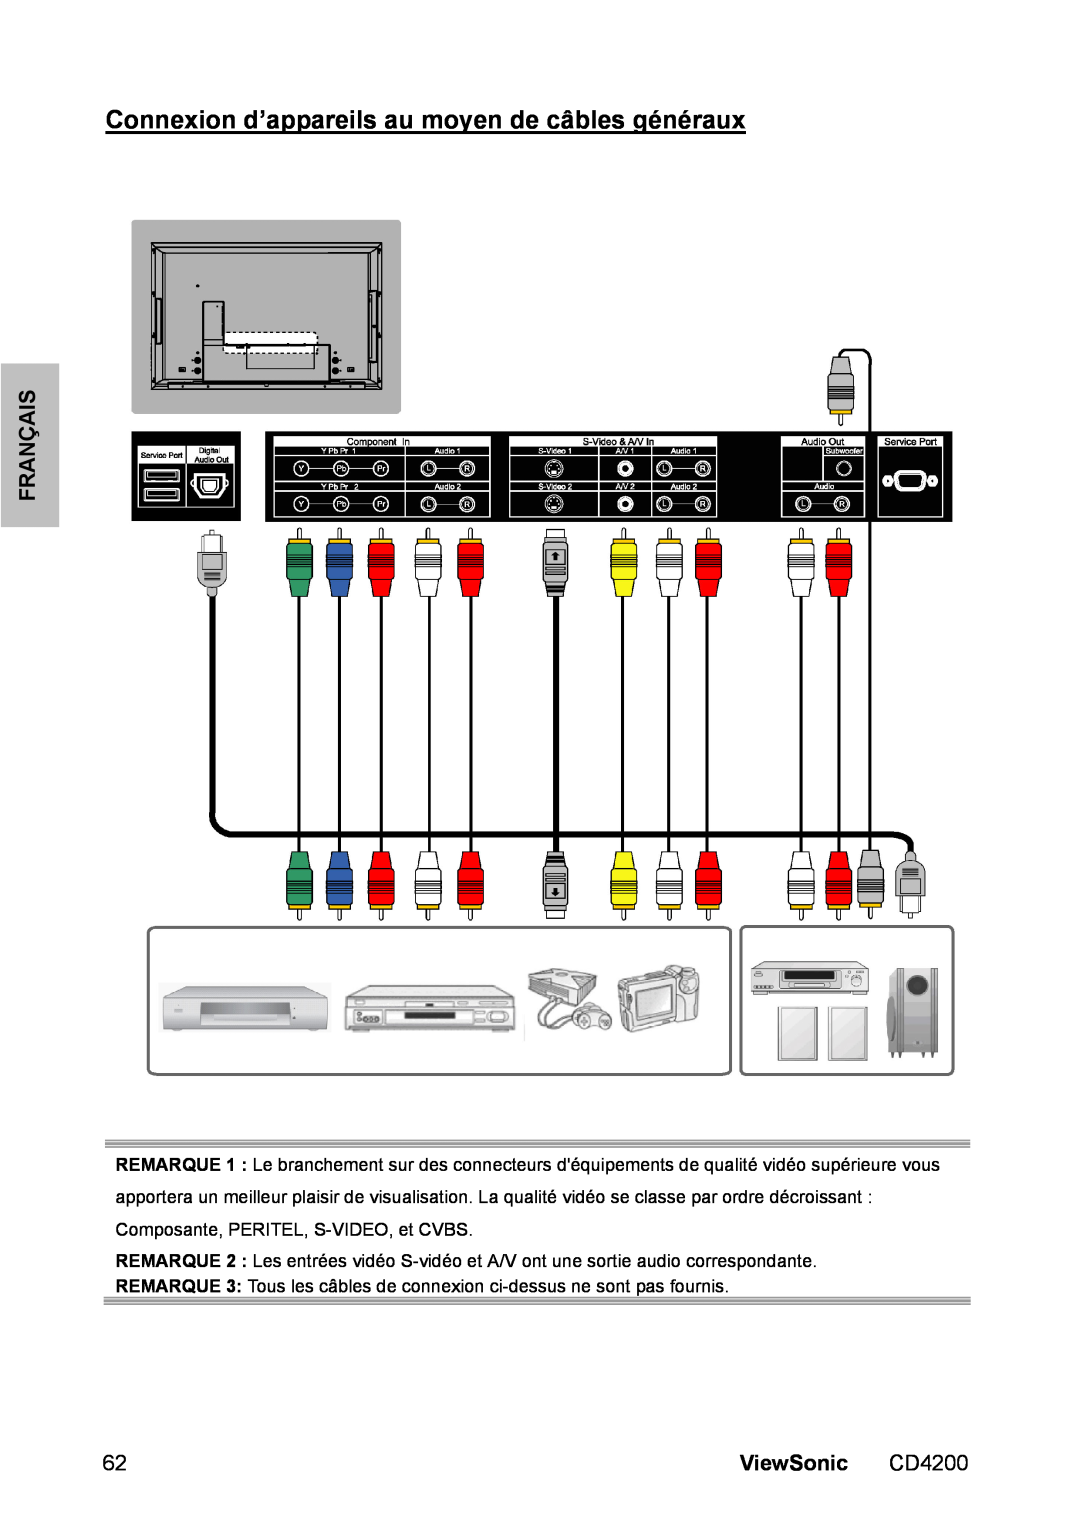 ViewSonic CD4200 manual Connexion d’appareils au moyen de câbles généraux, Français, ViewSonic 